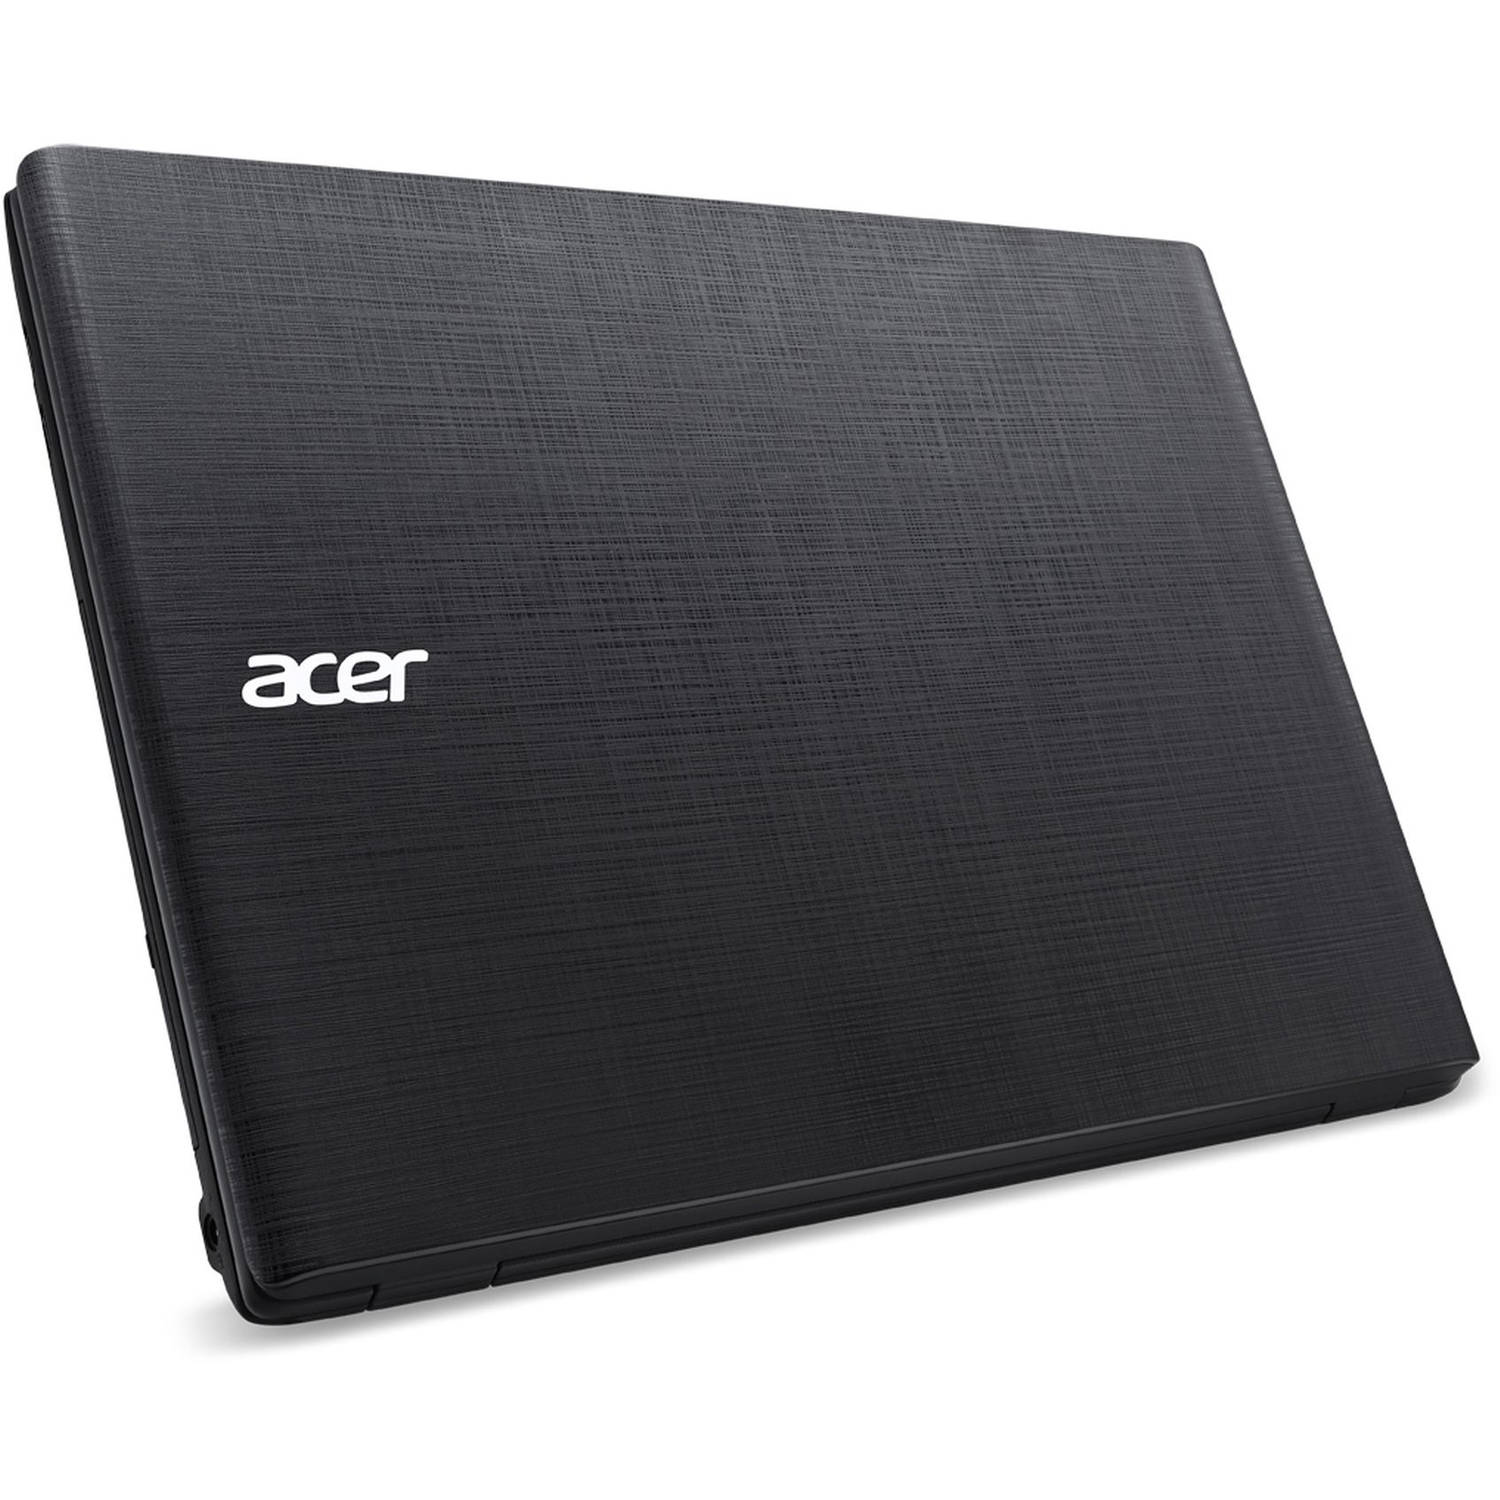 ACER ASPIRE E5-475G - i5(7200U)-8GB-1TB-2GB